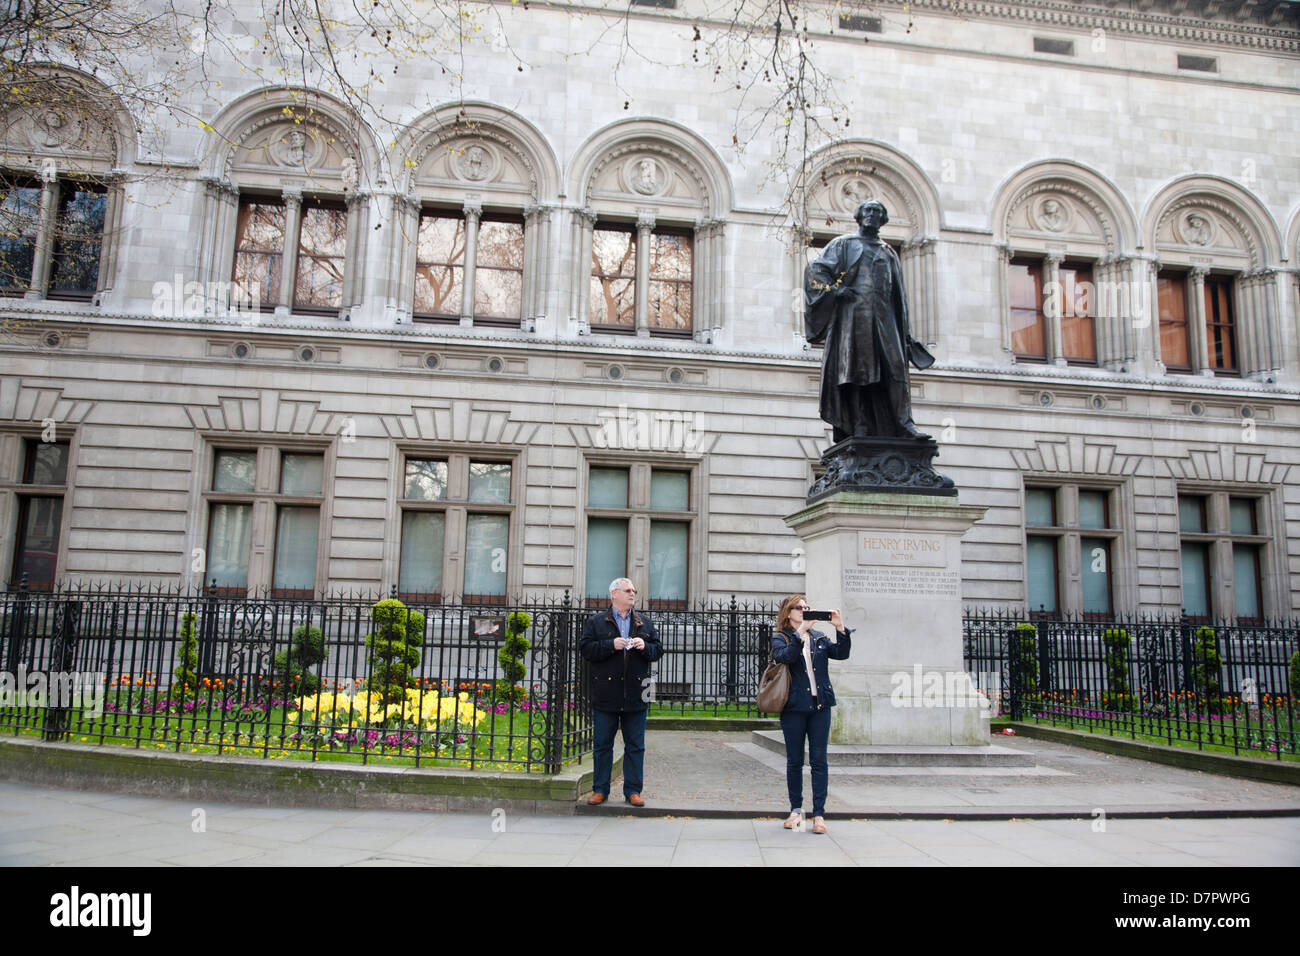 Statue de Henry Irving en dehors de la National Portrait Gallery, West End, Londres, Angleterre, Royaume-Uni Banque D'Images